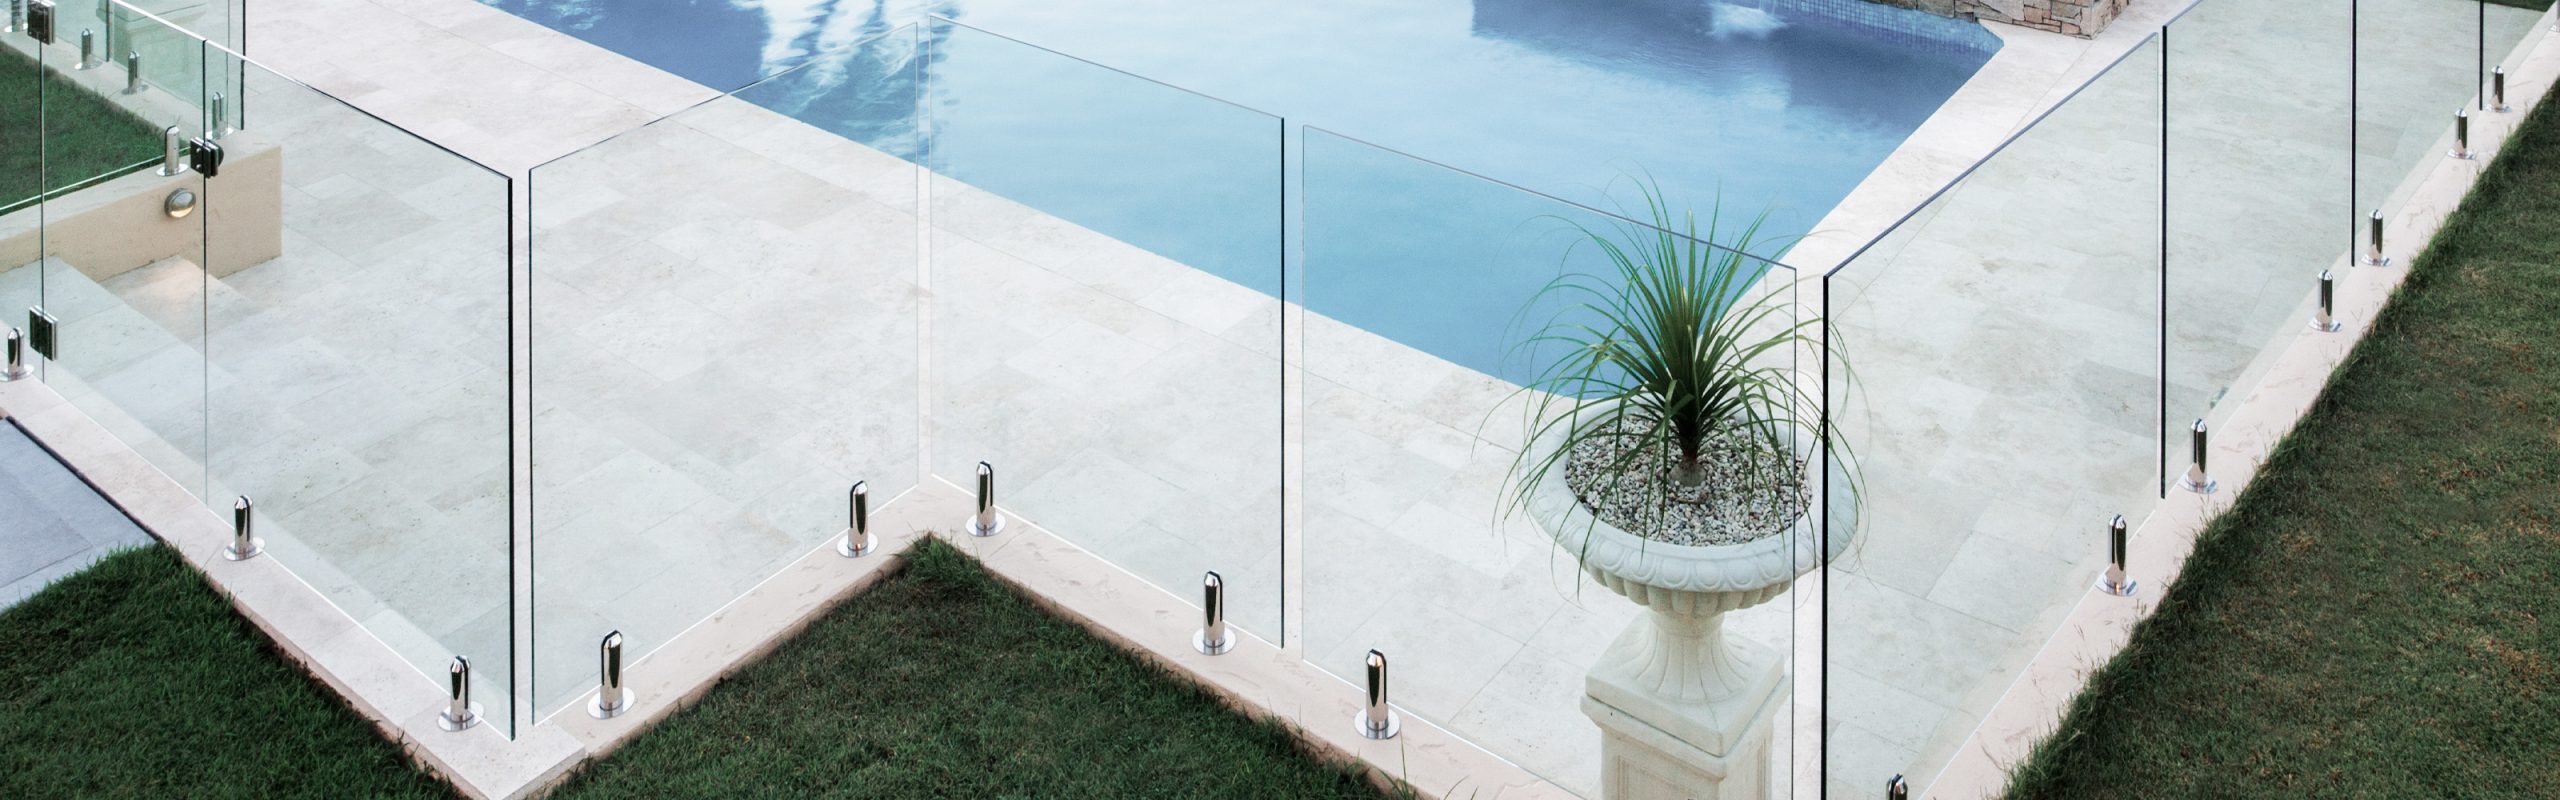 Glass Pool Fence Railing